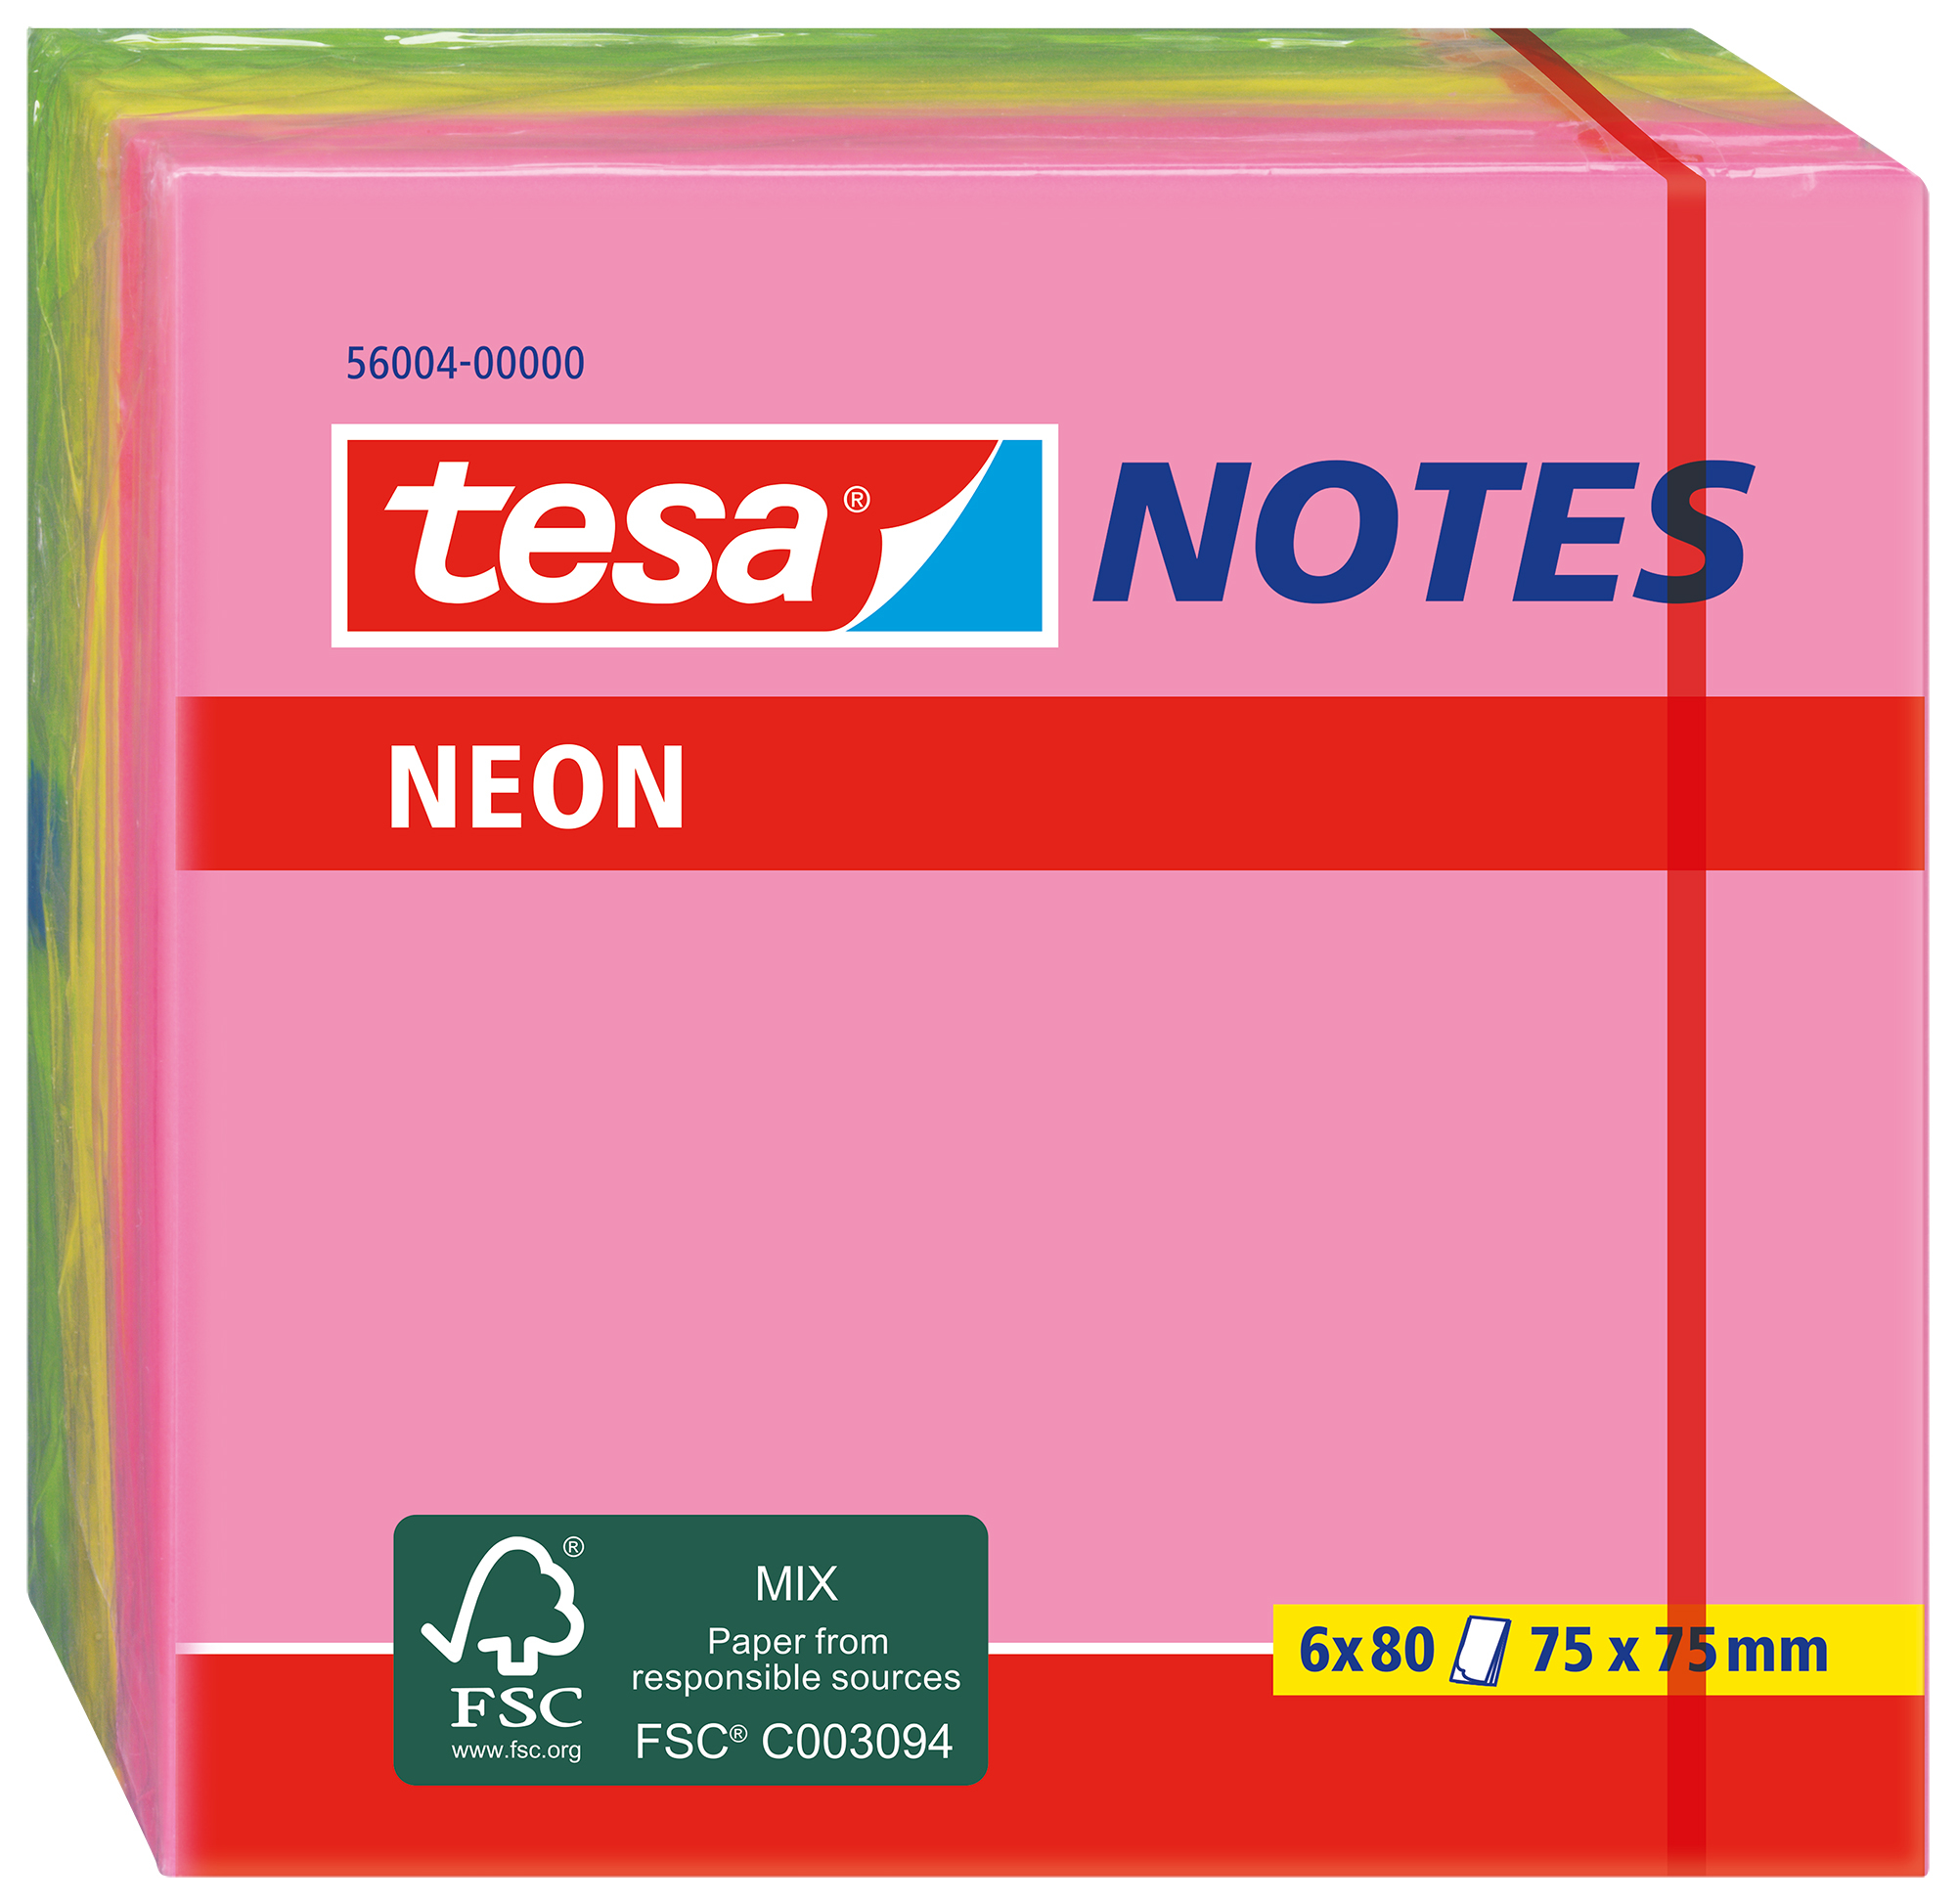 TESA Neon Notes 75x75mm 560040000 3 couleurs ass. 6x80 flls.